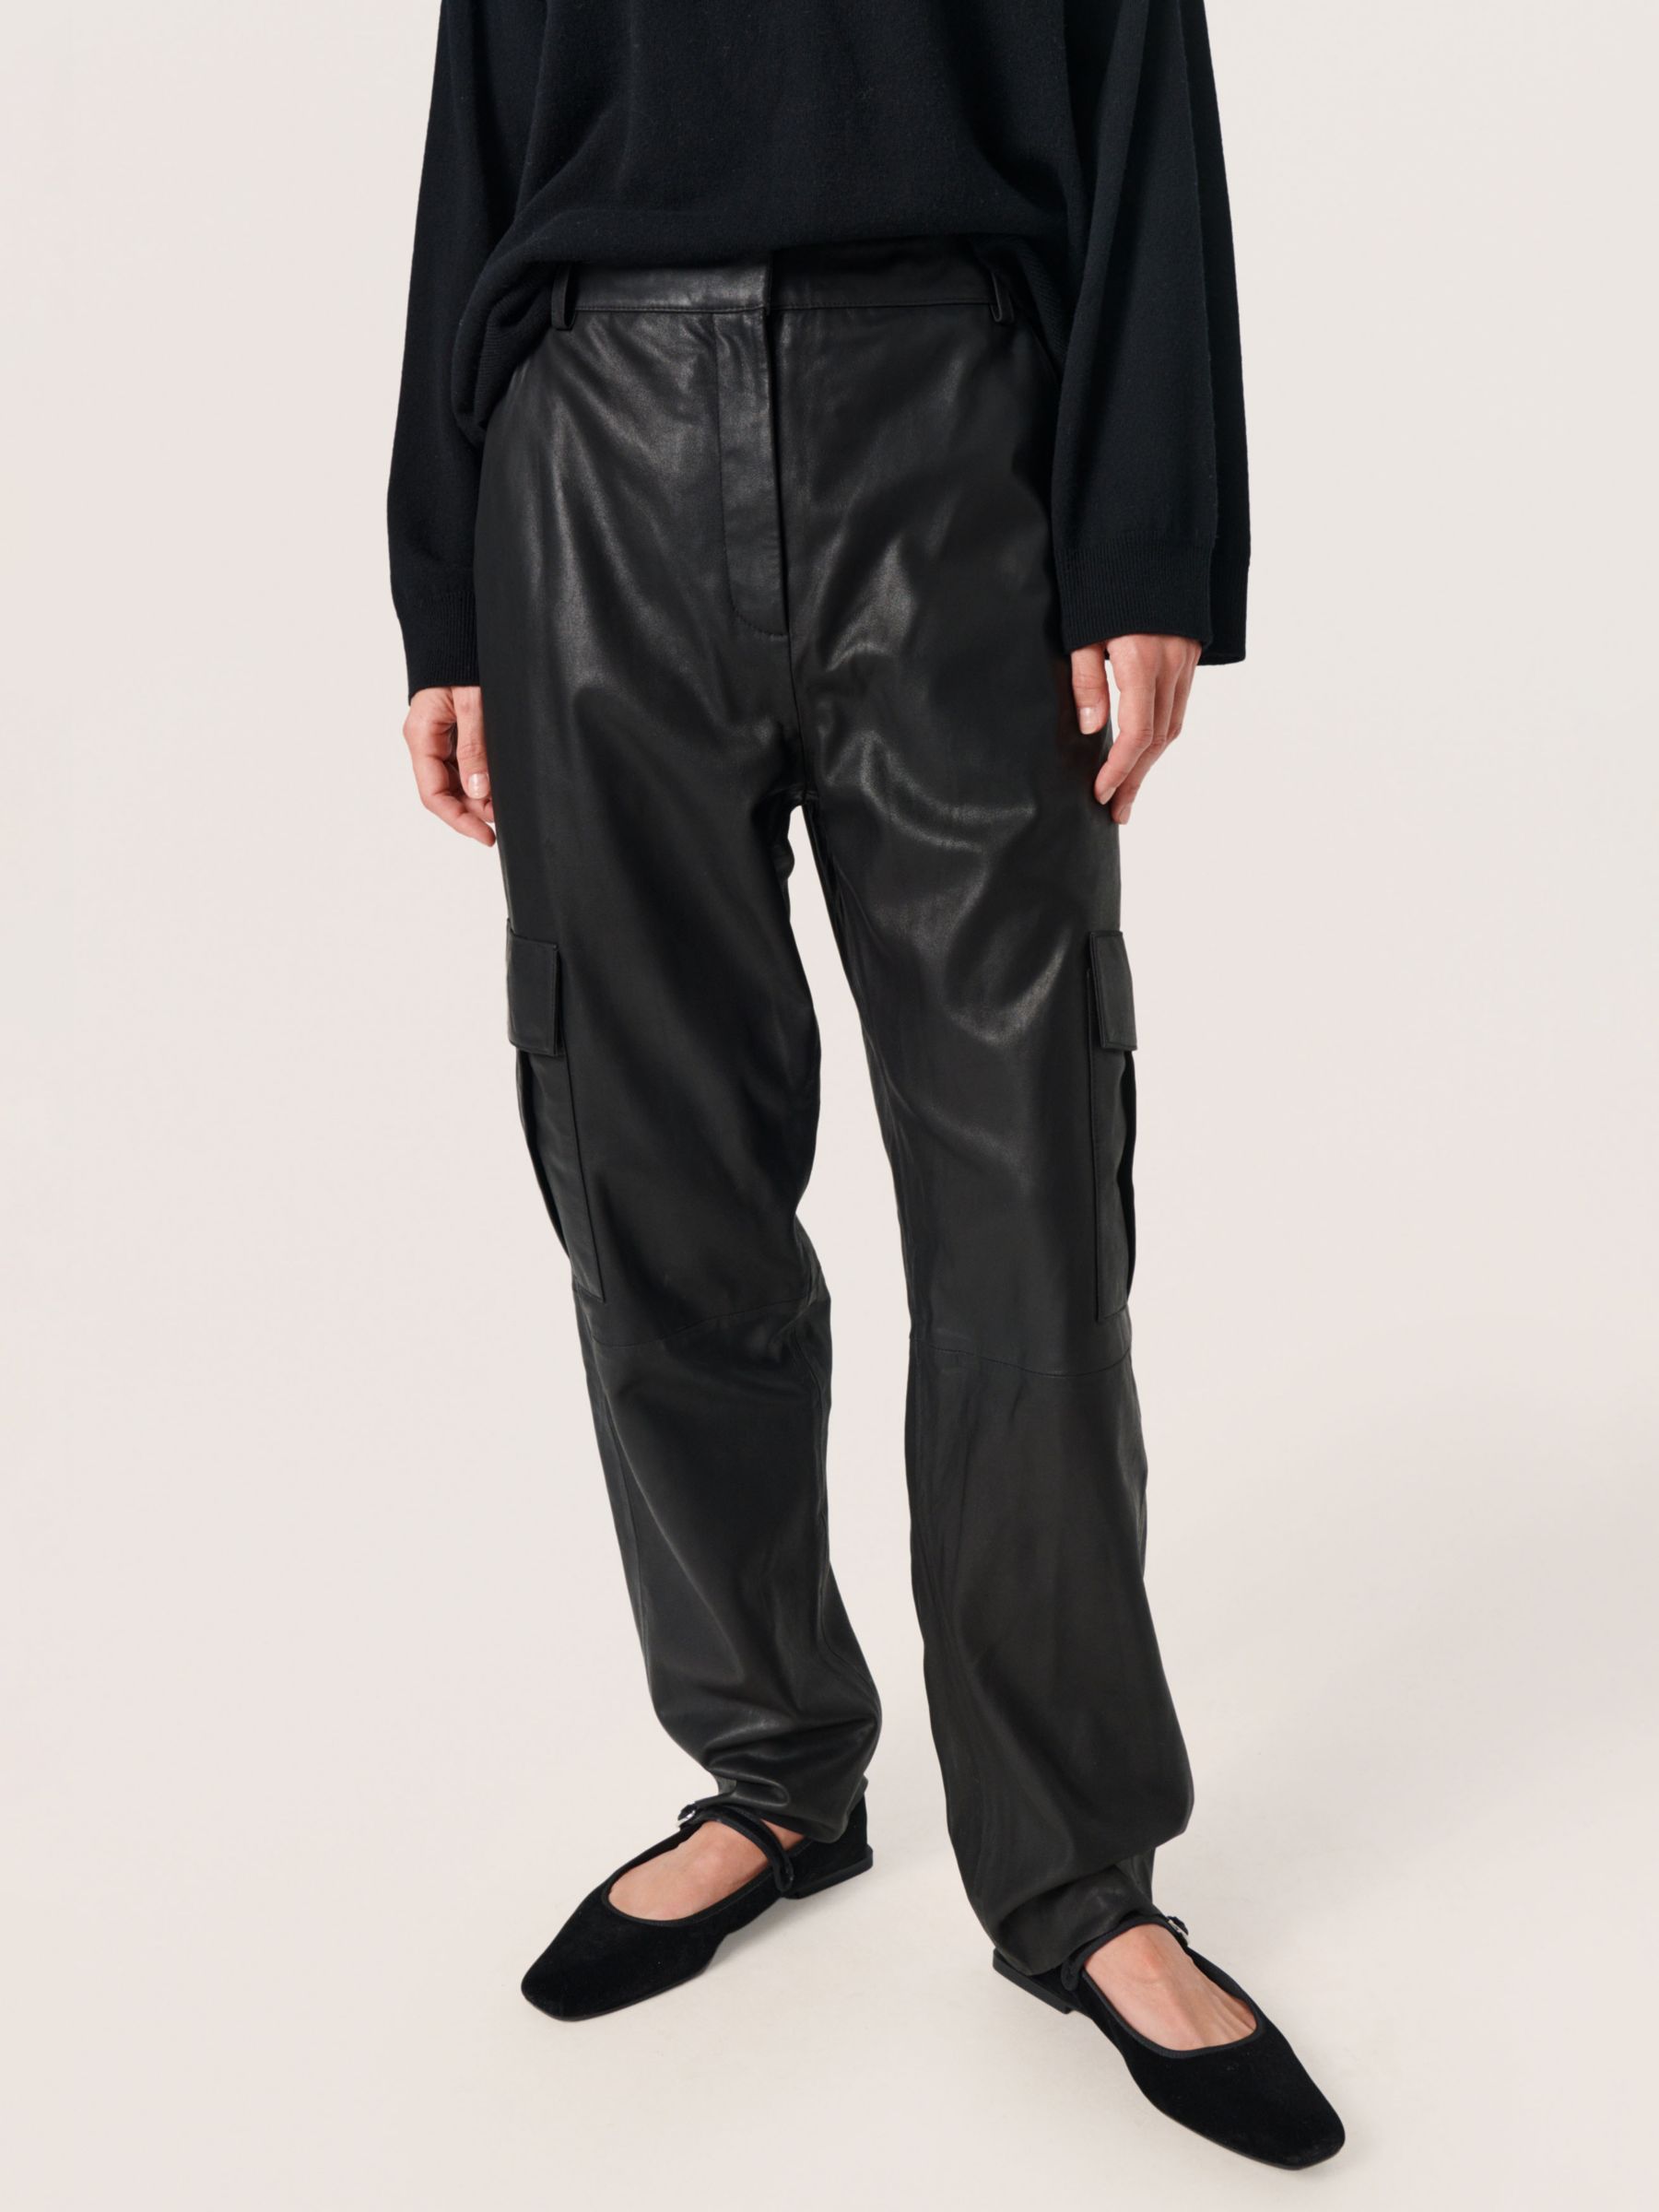 Women's Trousers & Leggings - Soaked In Luxury, Black